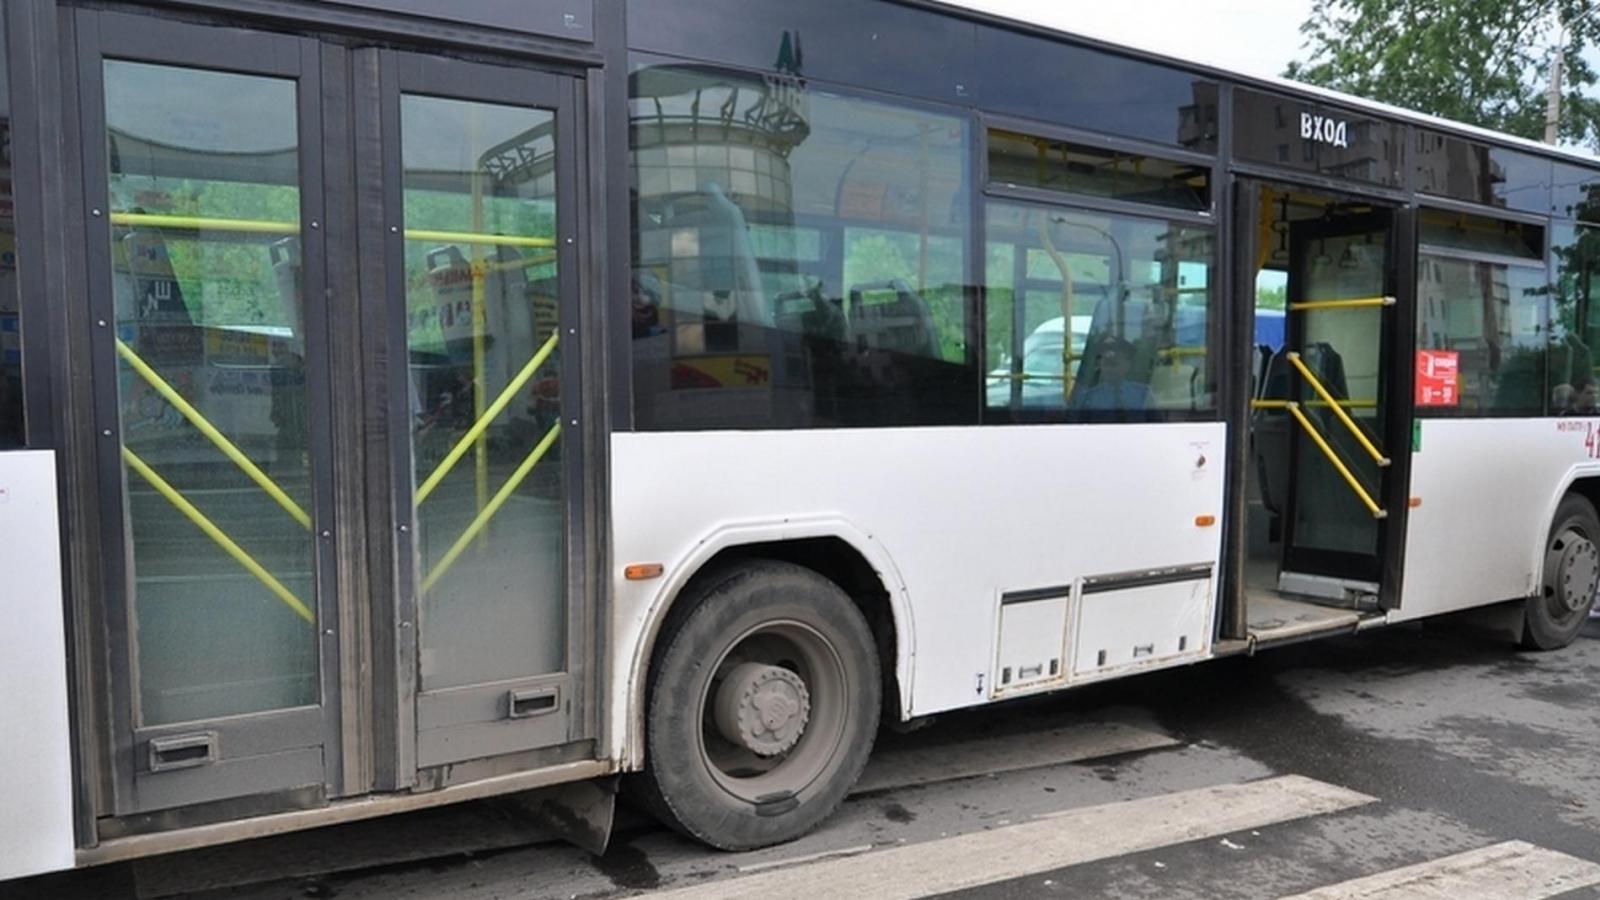  9 мая проезд в общественном транспорте Вологды будет бесплатным для «детей войны» 